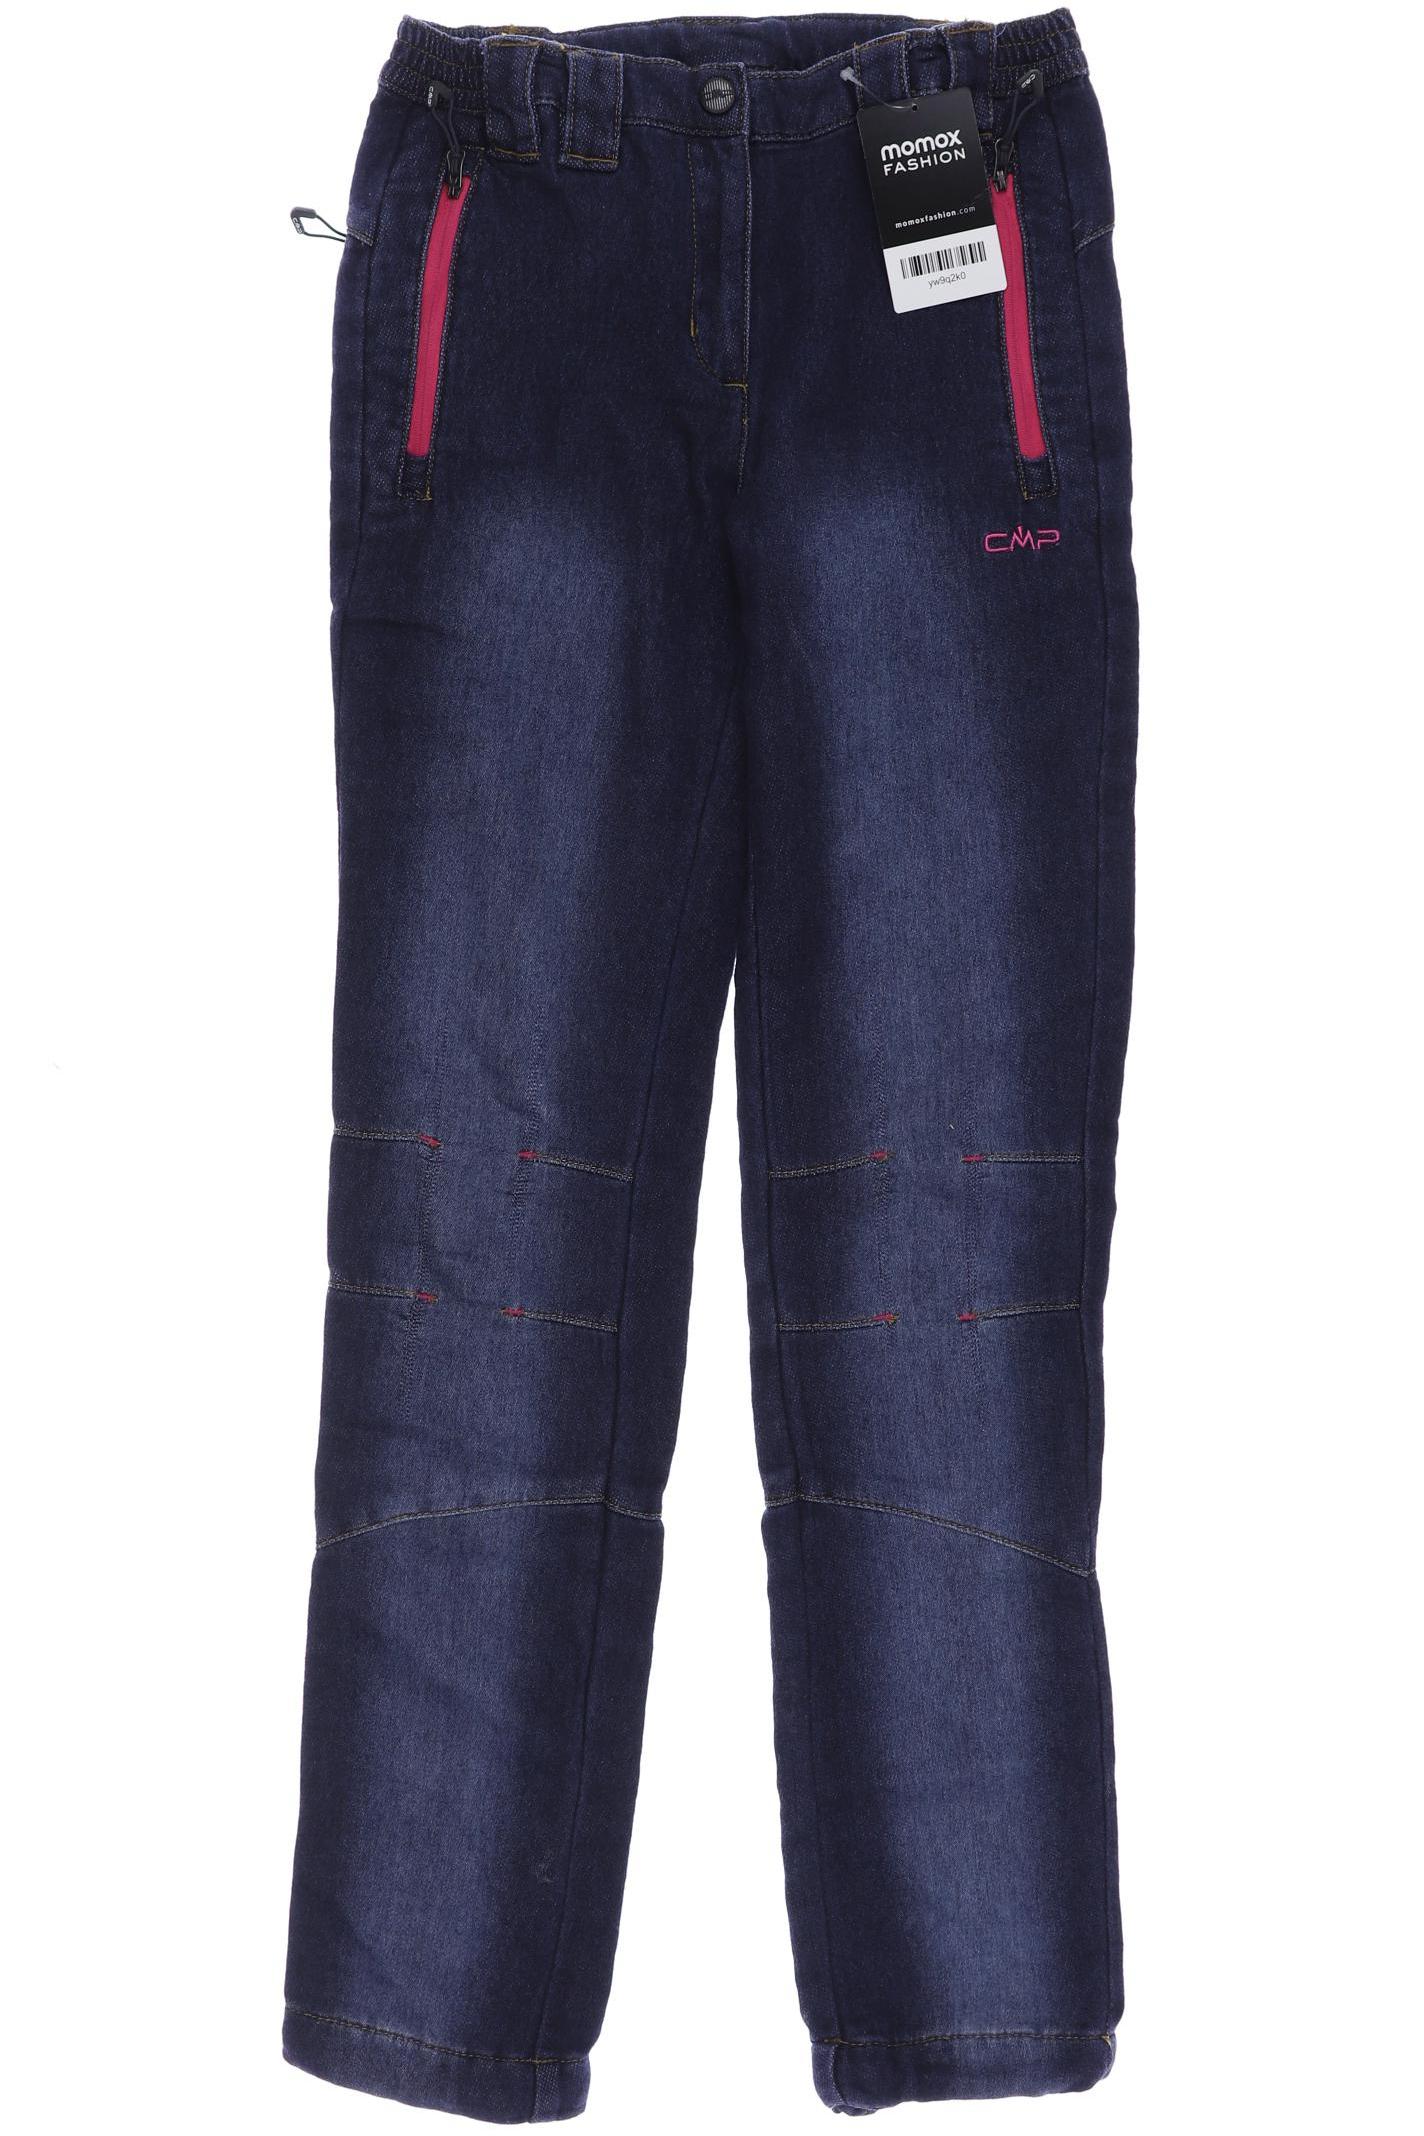 CMP Damen Jeans, marineblau, Gr. 152 von CMP